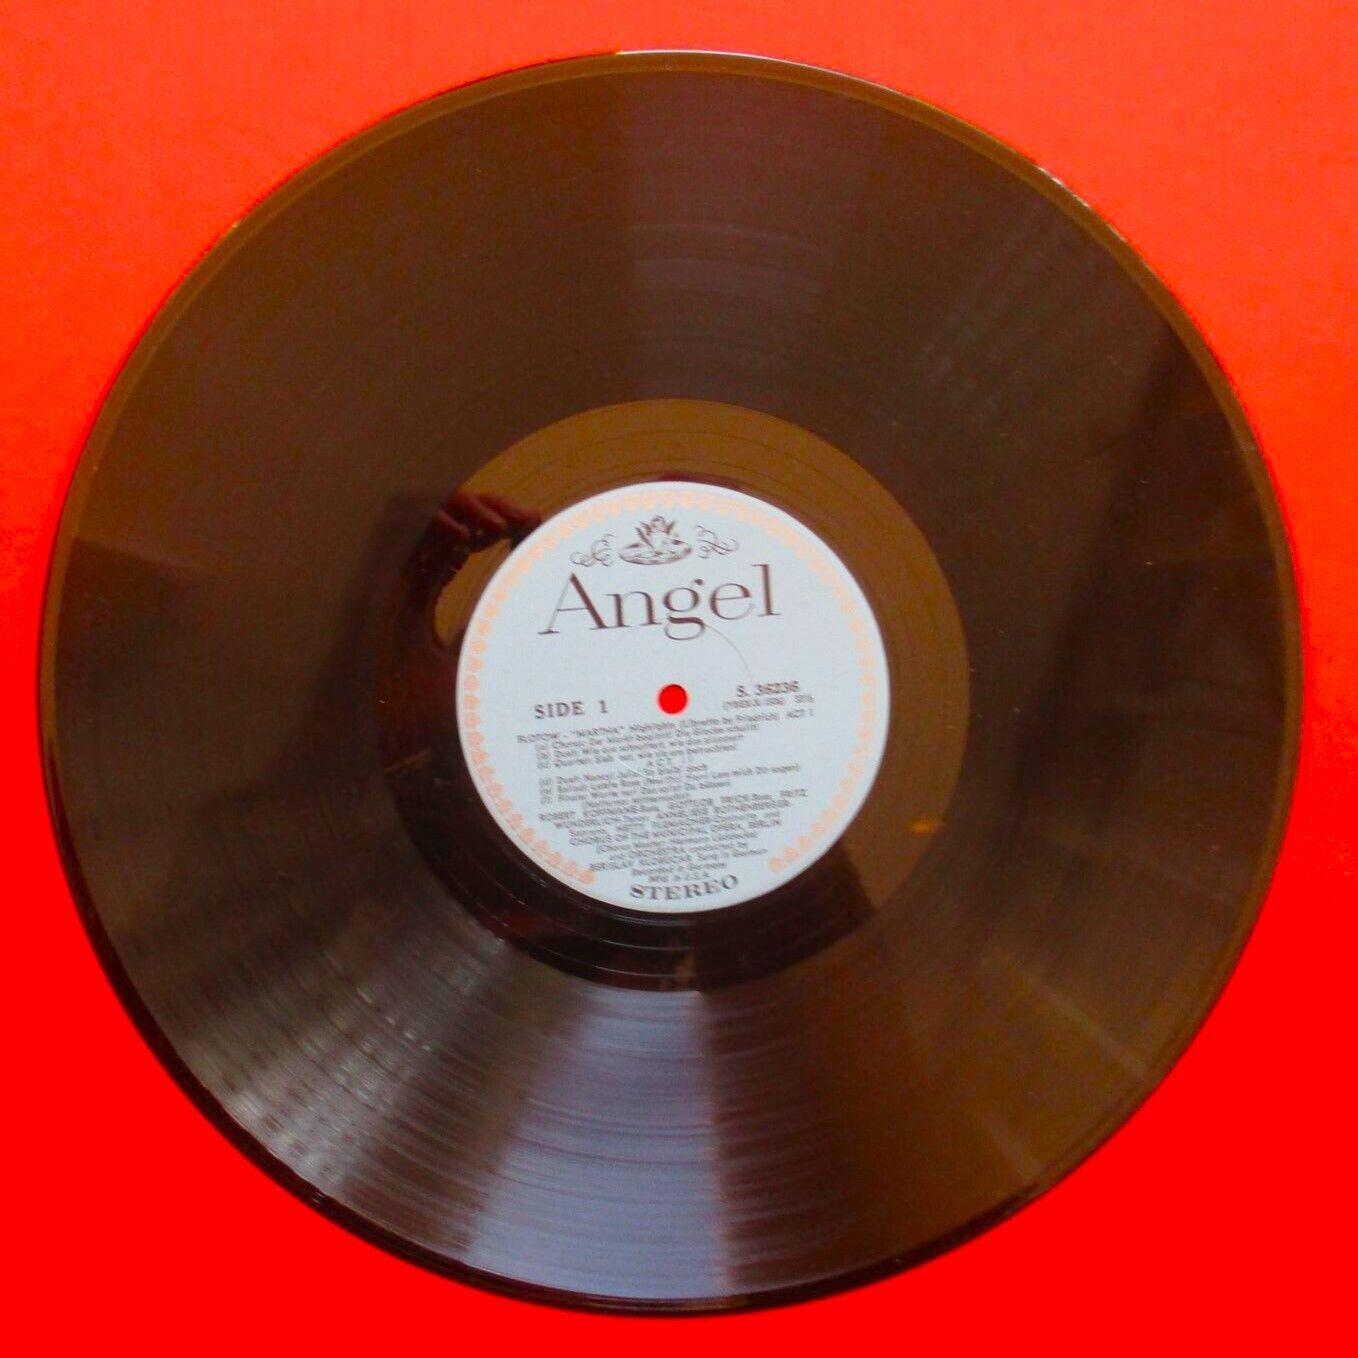 Friedrich von Flotow ‎Martha Highlights Vinyl LP 1965 US with Insert